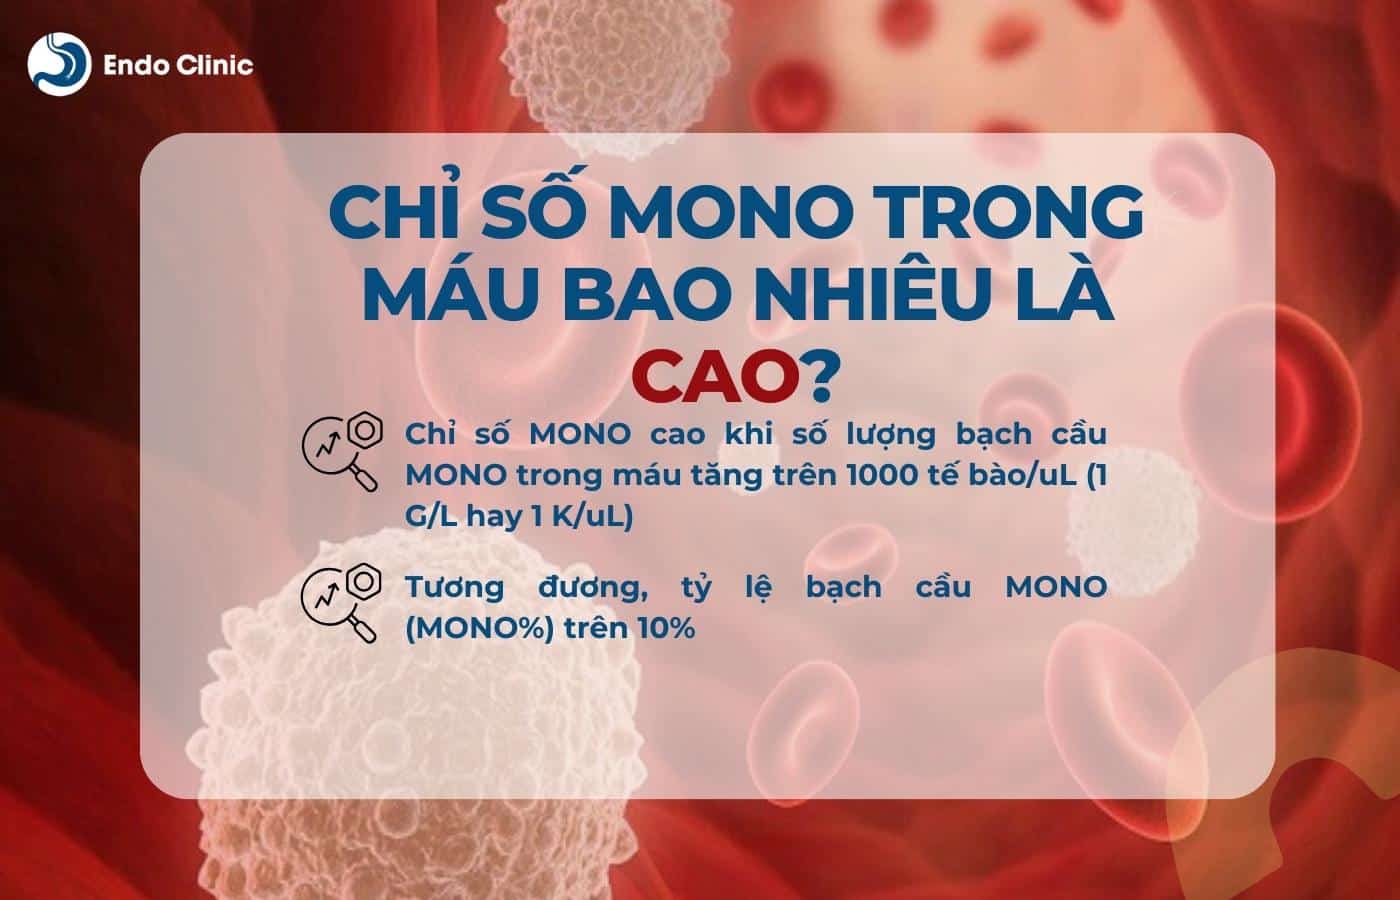 Chỉ số MONO trong máu cao là bao nhiêu?